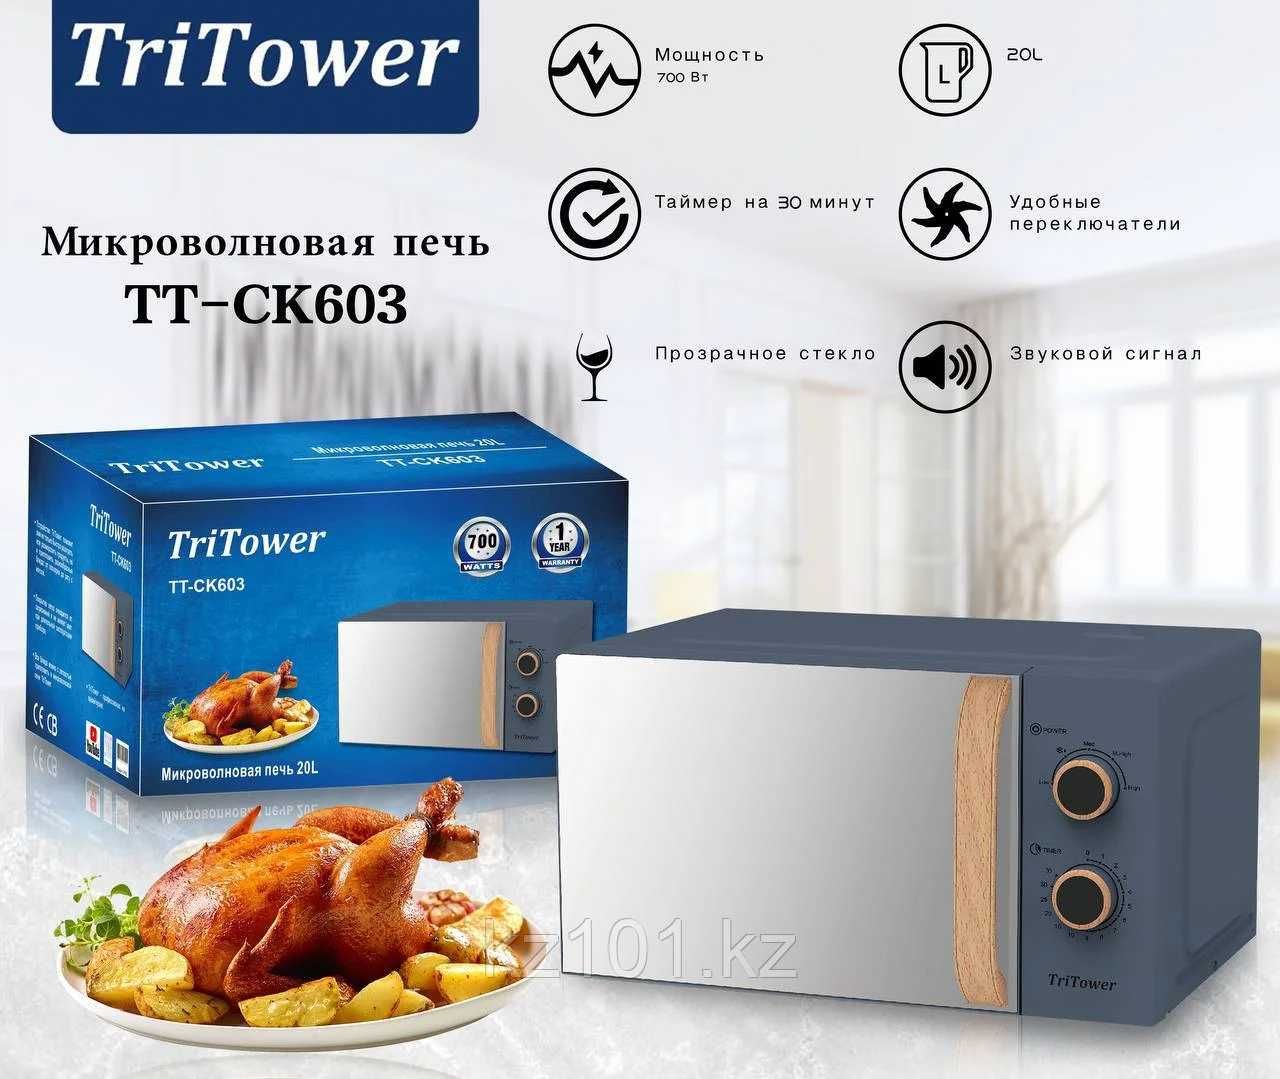 Микроволновая печь Tri Tower